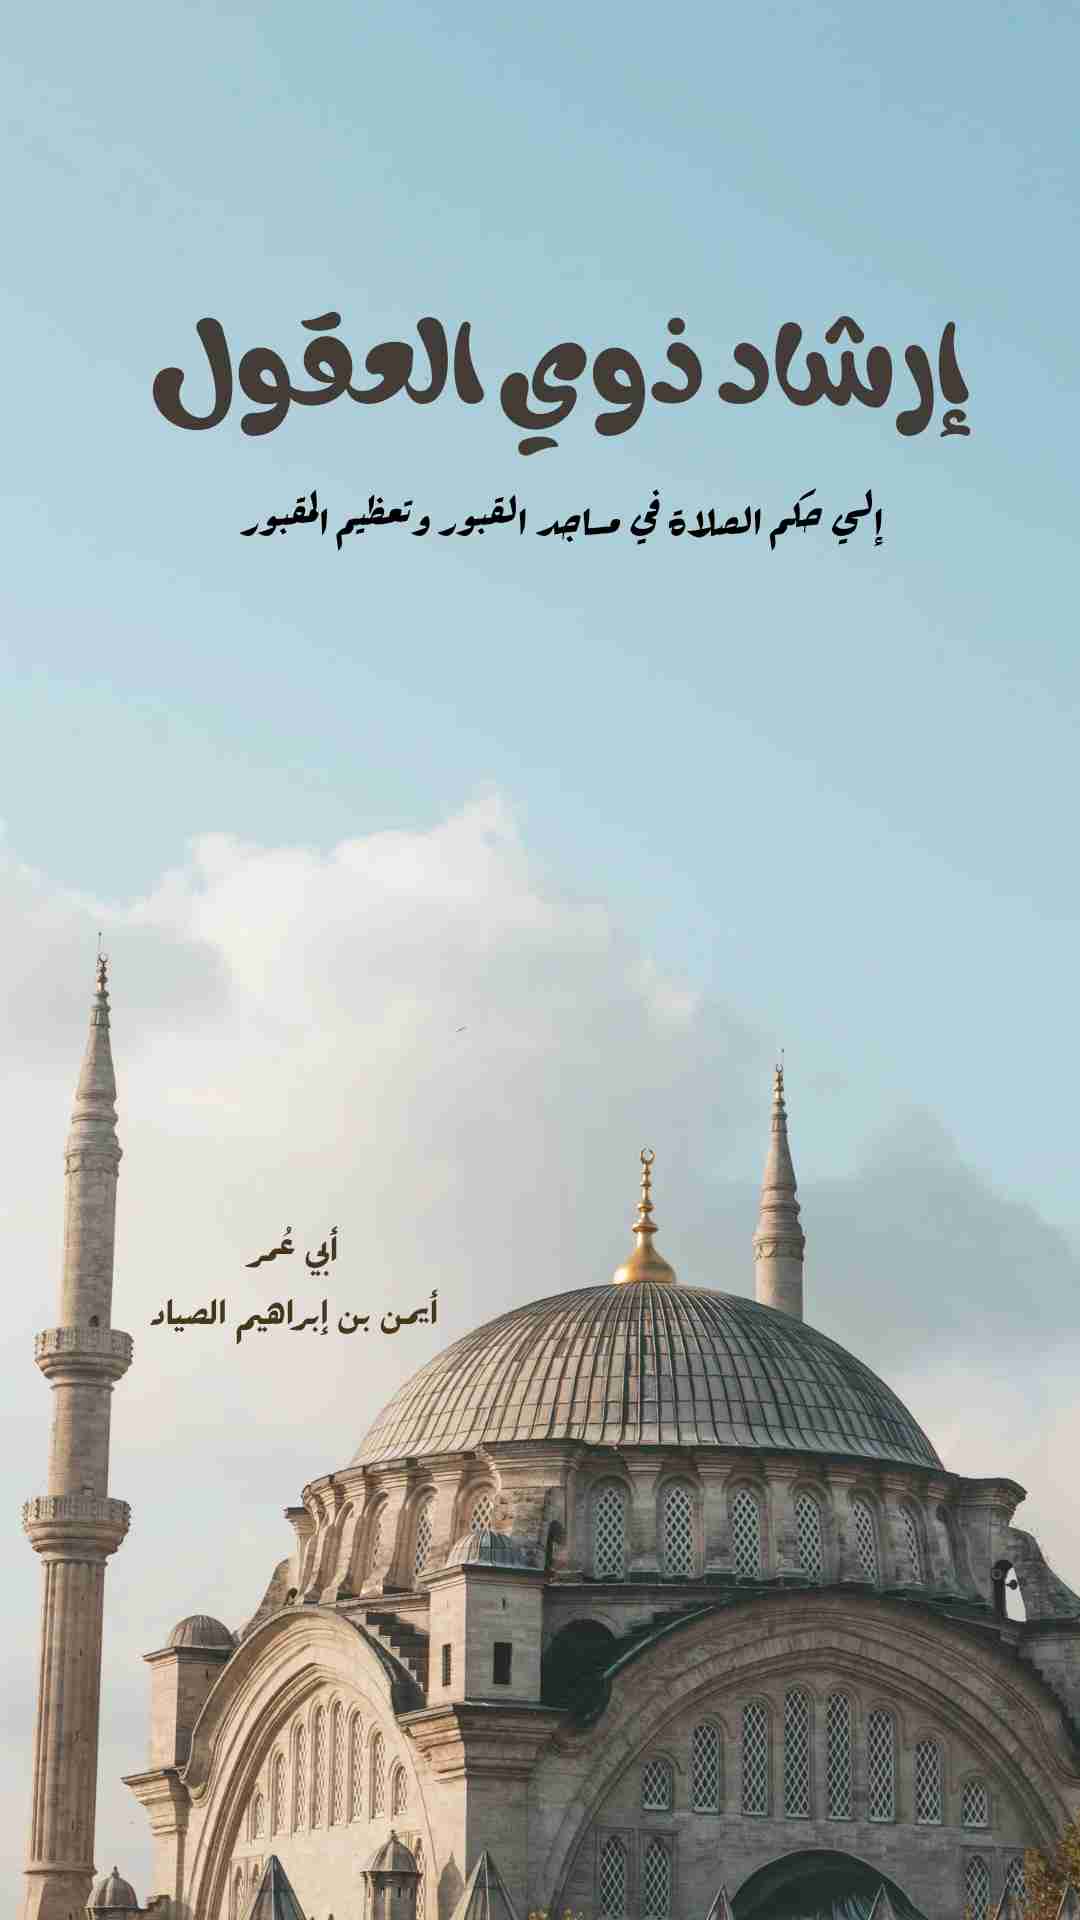 كتاب إرشاد ذوي العقول إلى حكم الصلاة في مساجد القبور وتعظيم المقبور لـ أيمن بن إبراهيم الصياد